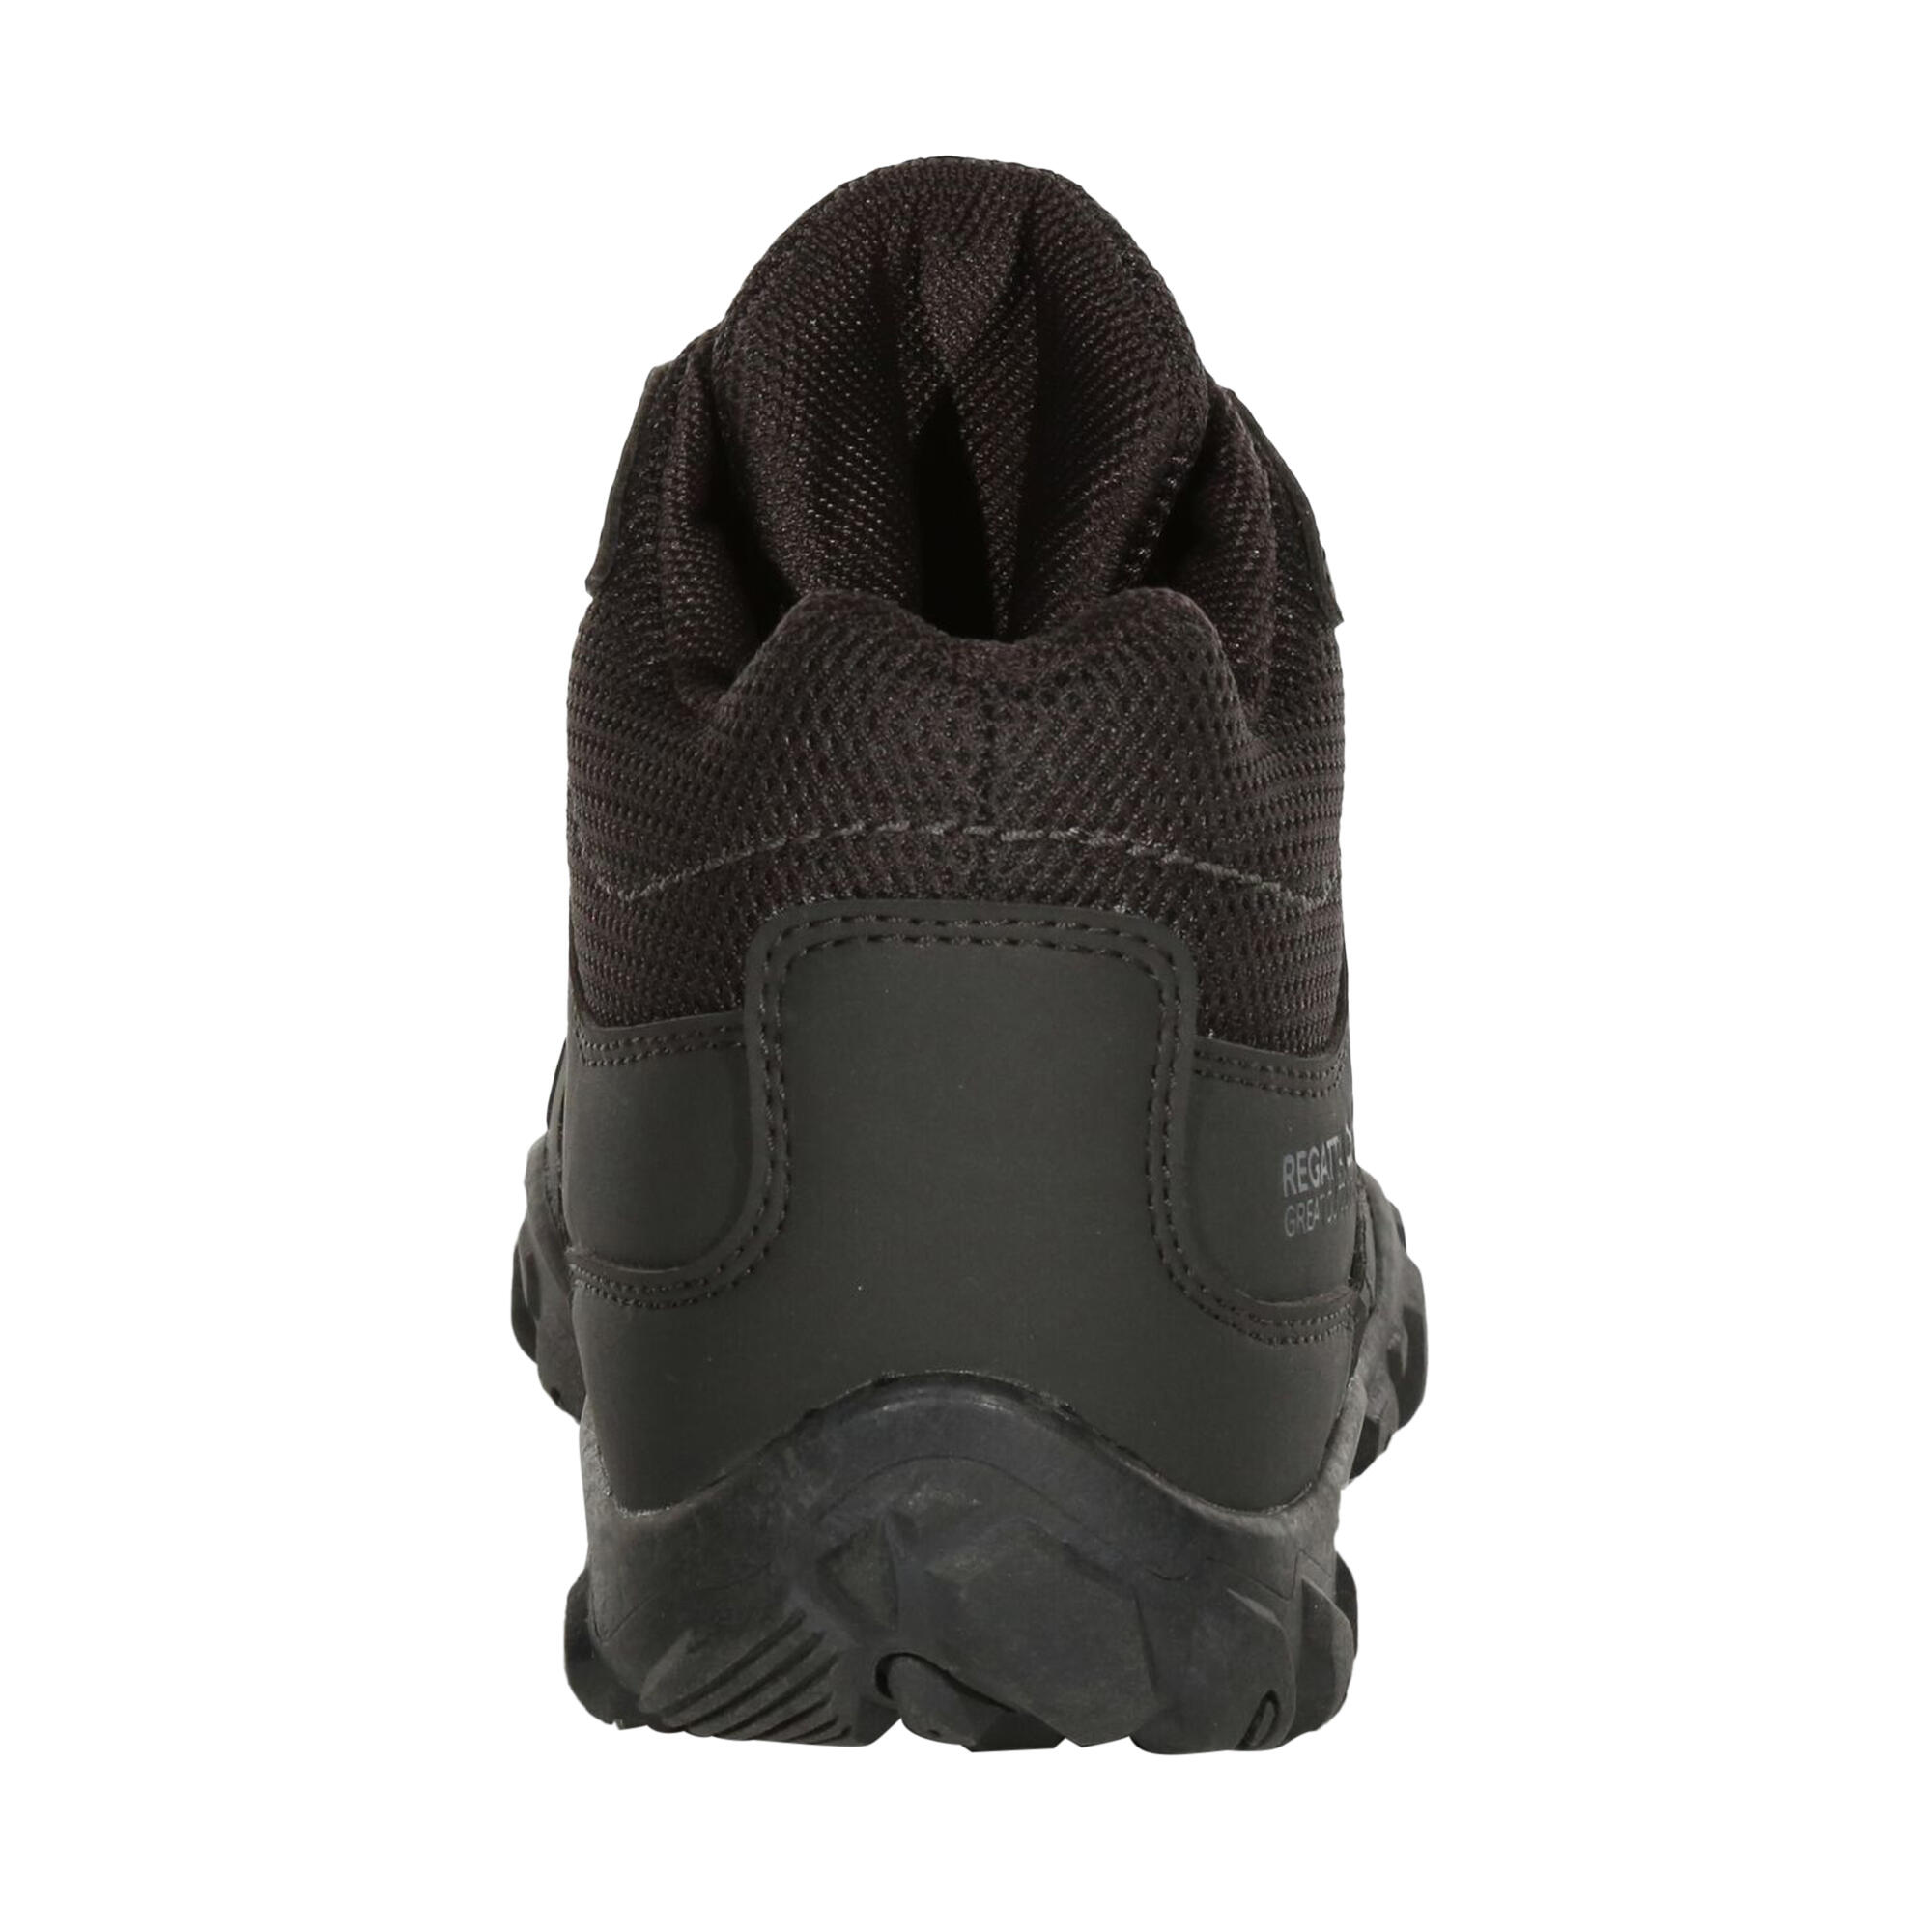 Womens/Ladies Edgepoint Waterproof Walking Boots (Ash Granite) 2/5